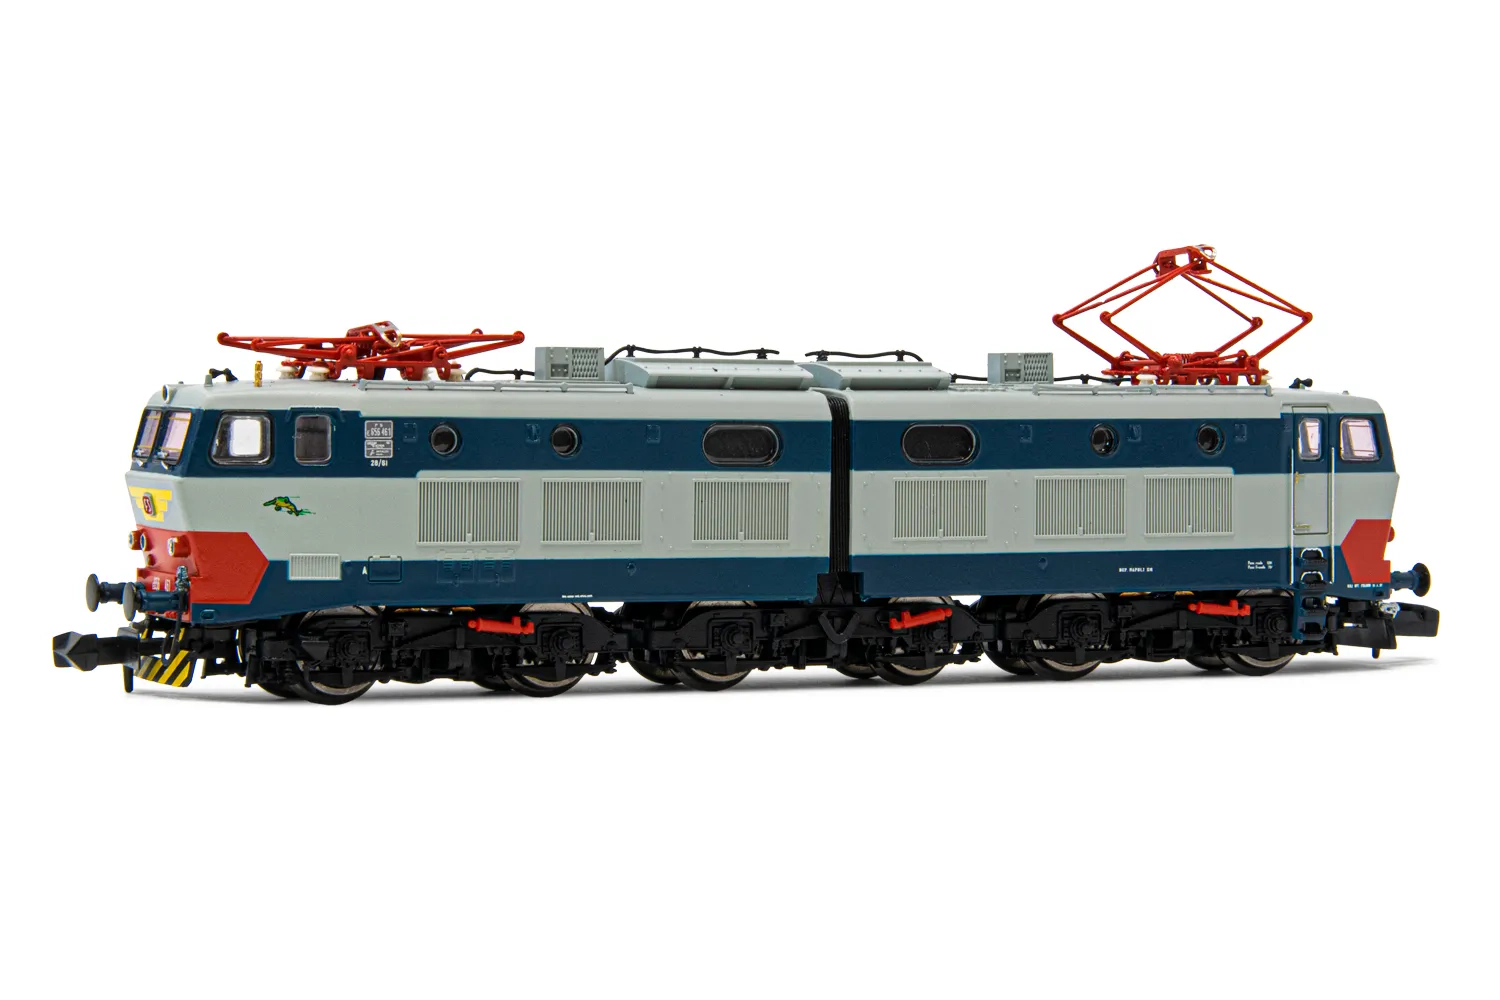 FS, locomotiva elettrica E.656 quinta serie, livrea blu/grigio, ep. V, con DCC decoder